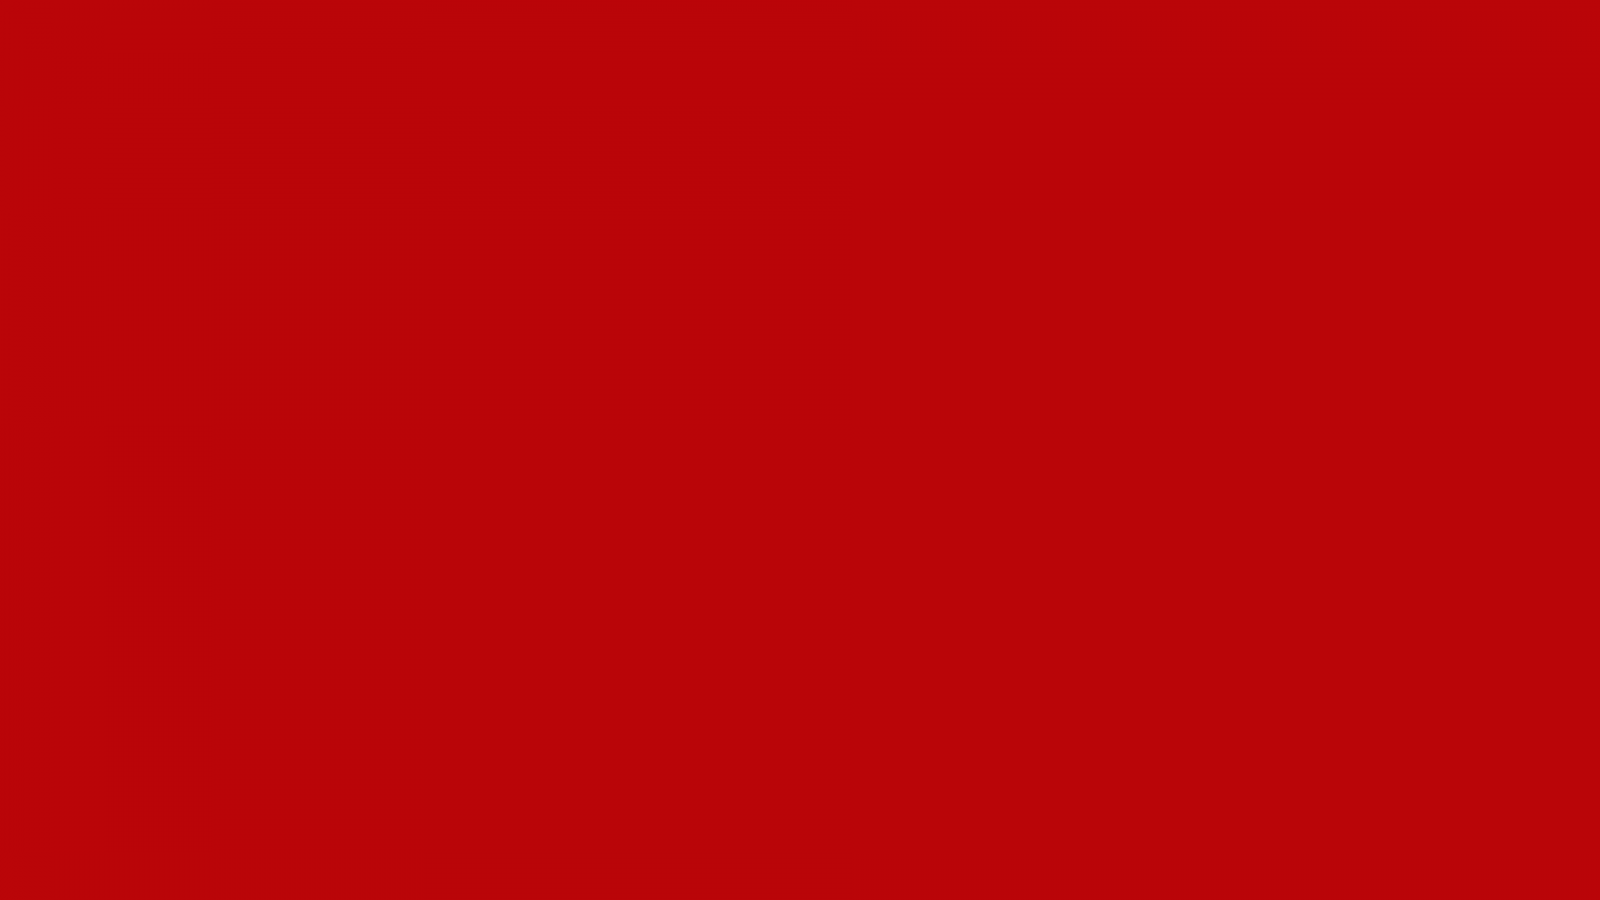 Никак красная. Флаг венгерской Советской Республики 1919. Красный цвет. Красный однотонный. Яркий красный цвет.